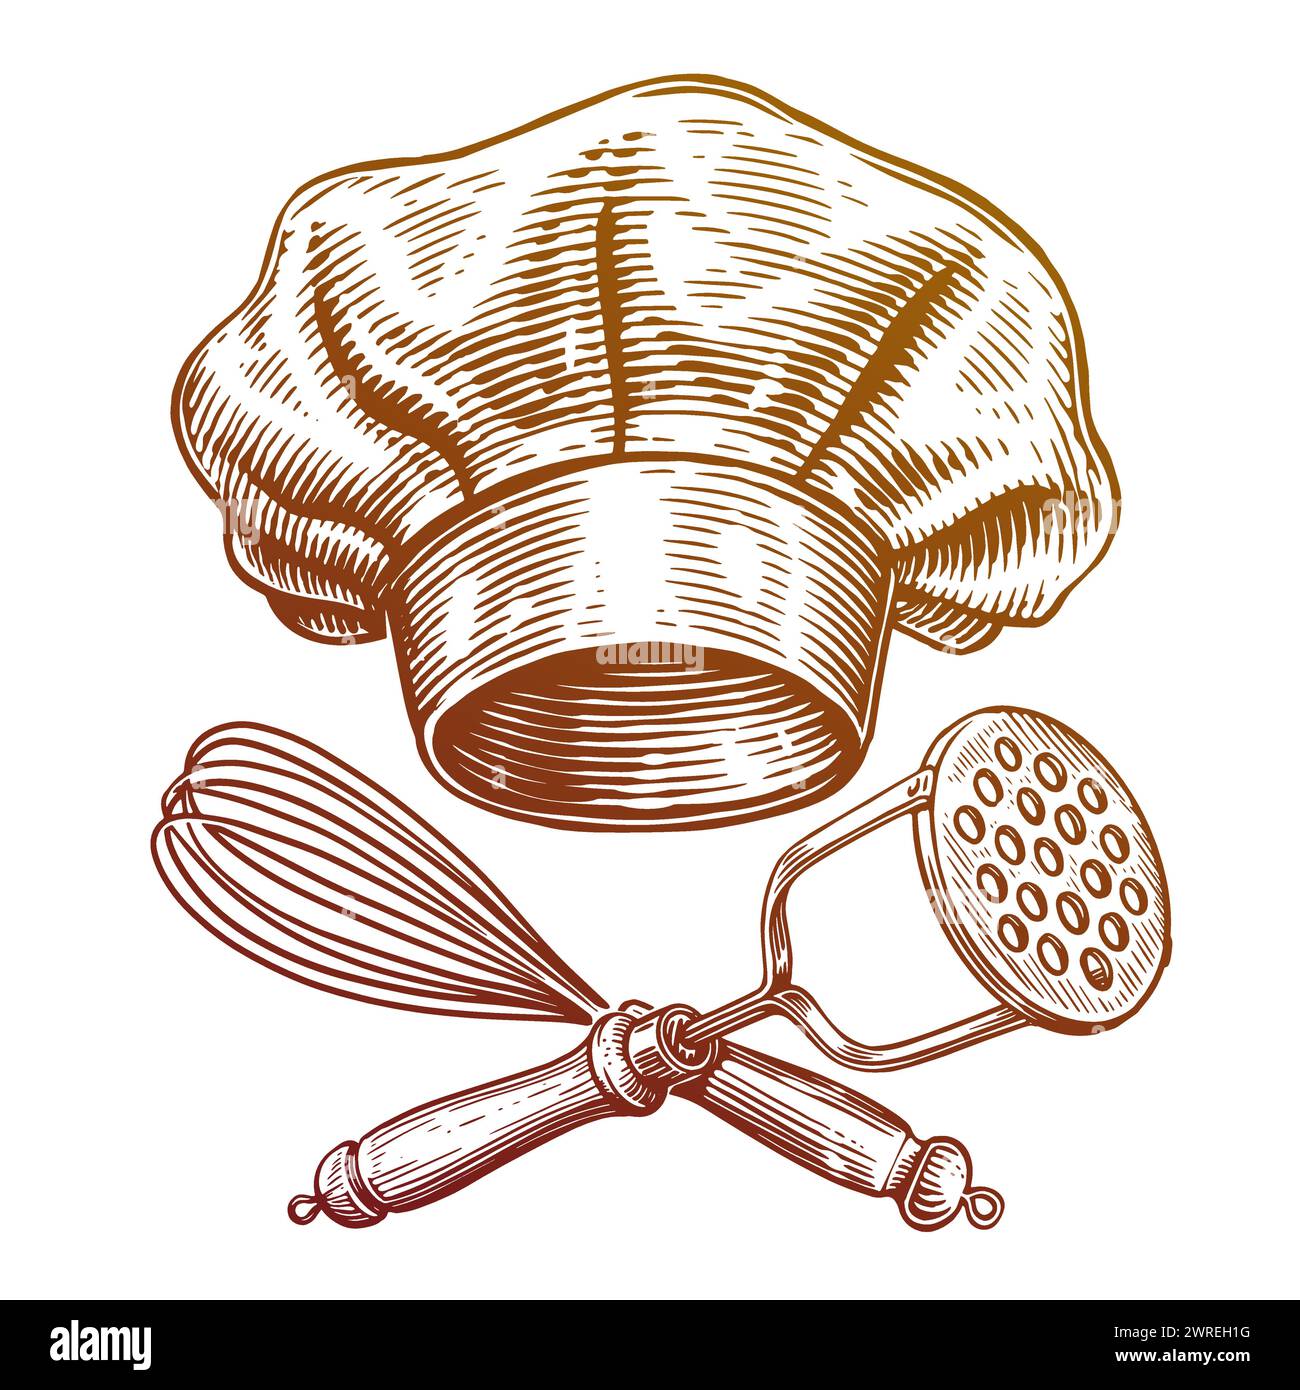 Kochmütze und gekreuzte Küchenutensilien. Lebensmittelkonzept, Bäckerei Emblem. Handgezeichnete Skizze Vintage Vektor Illustration Stock Vektor